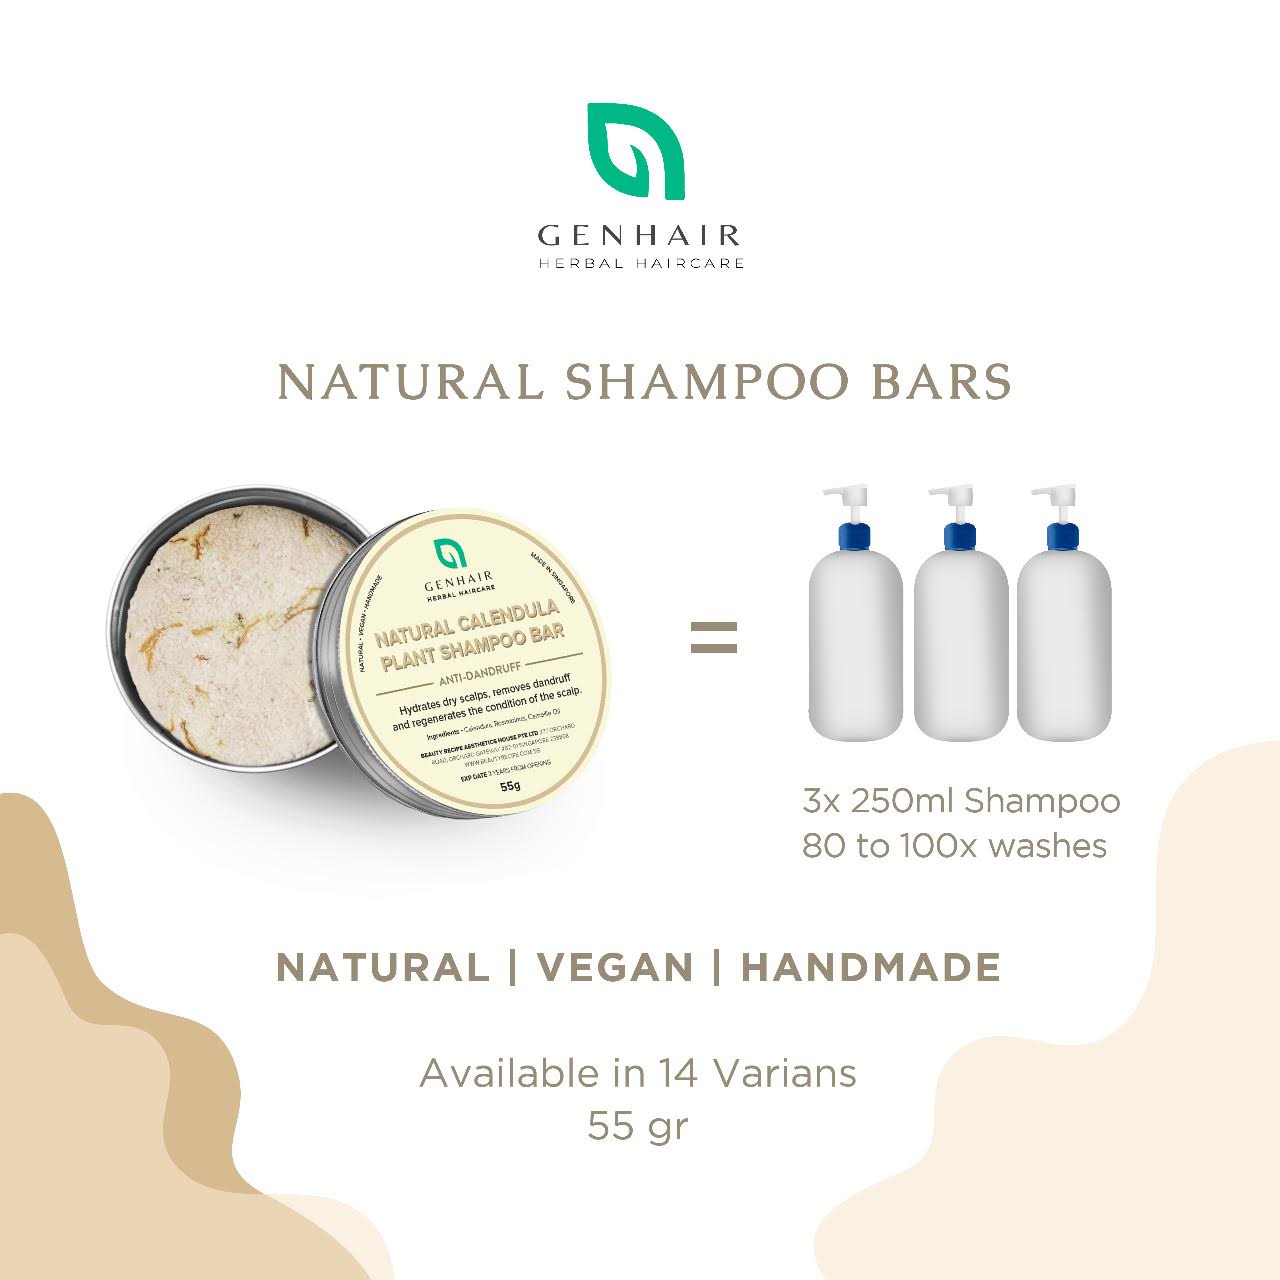 Natural Charcoal Shampoo Bar - Detox Clogged Pores